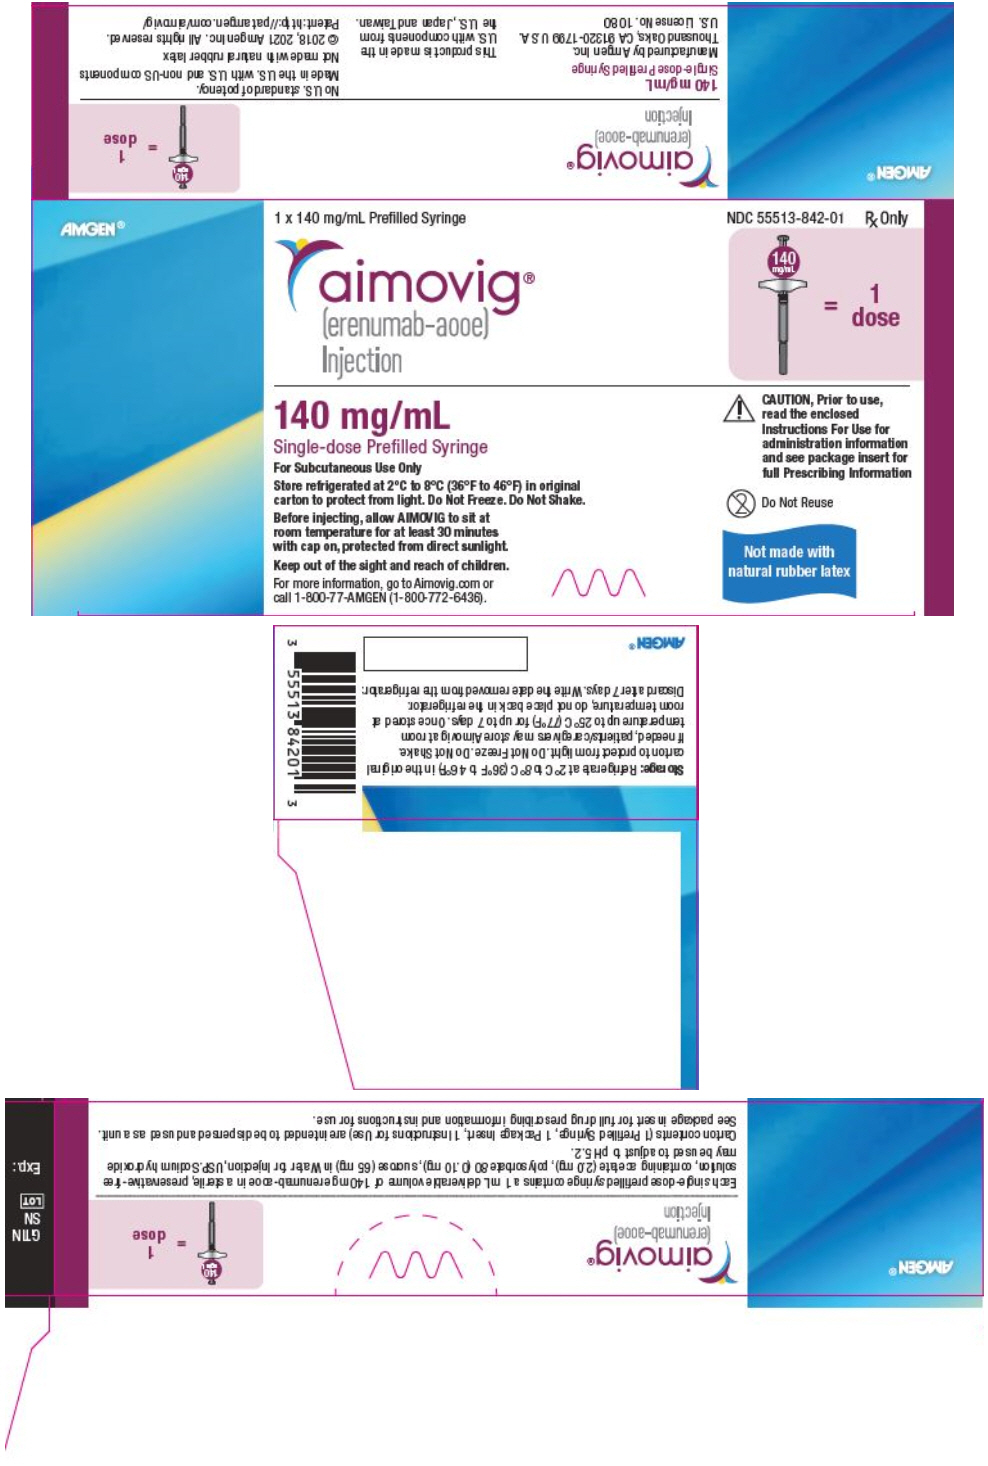 PRINCIPAL DISPLAY PANEL - 70 mg/mL Syringe Carton